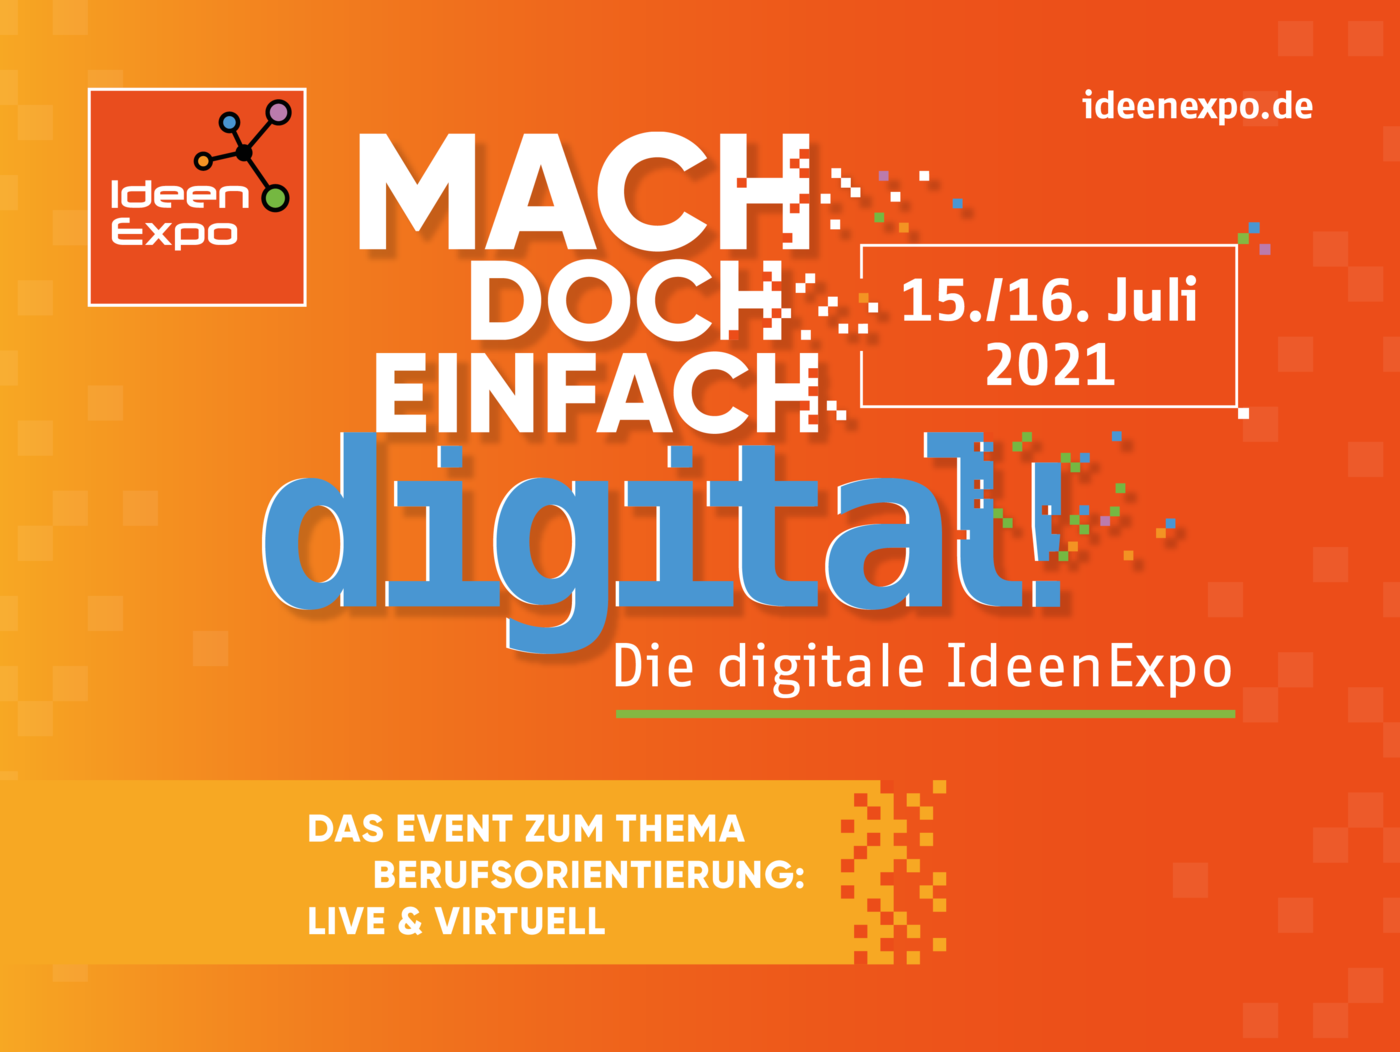 Grafik mit dem Logo der Messe IdeenExpo, dazu der Text: Mach doch einfach digital!